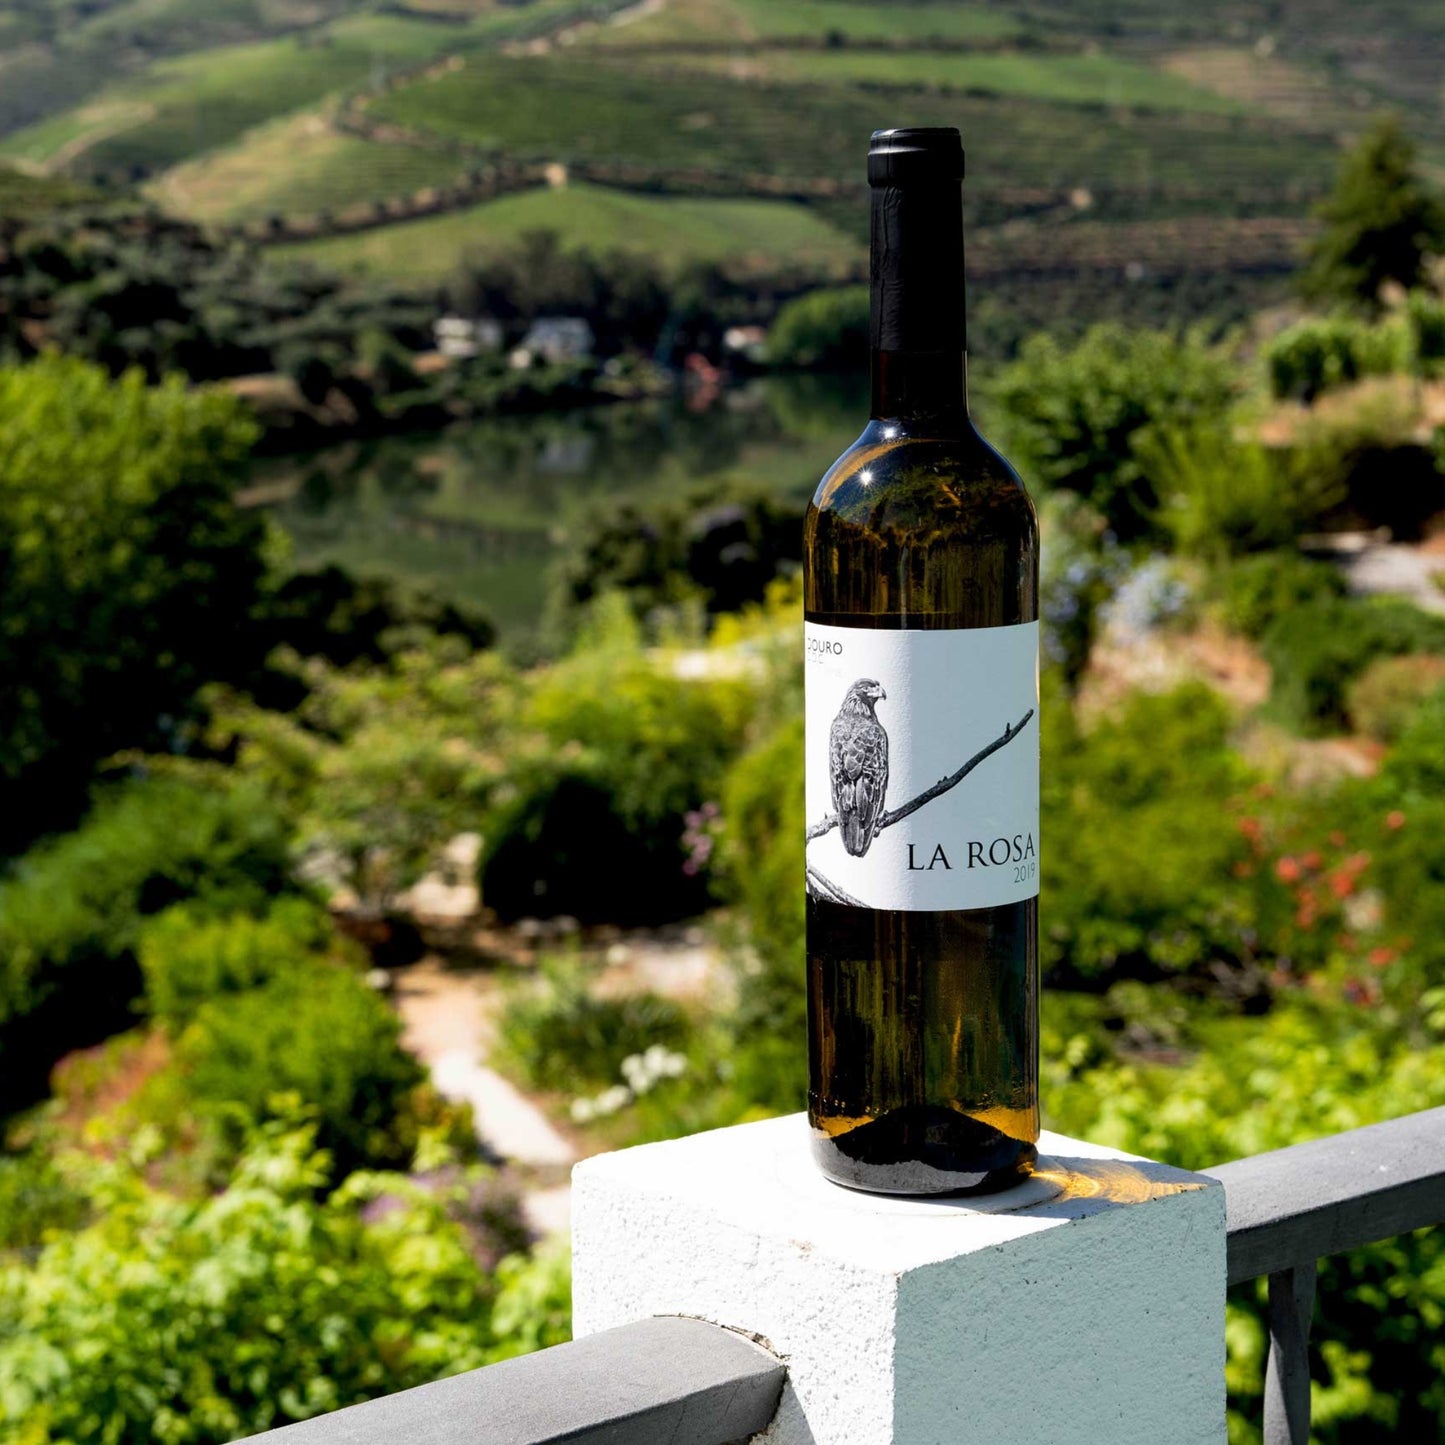 Flasche Weißwein vom Weingut Quinta de la Rosa, einem Weingut in Portugal. Flasche steht auf einem weißen Betonpfeiler eines Balkons. Im Hintergrund ist die Douro Landschaft zu sehen.